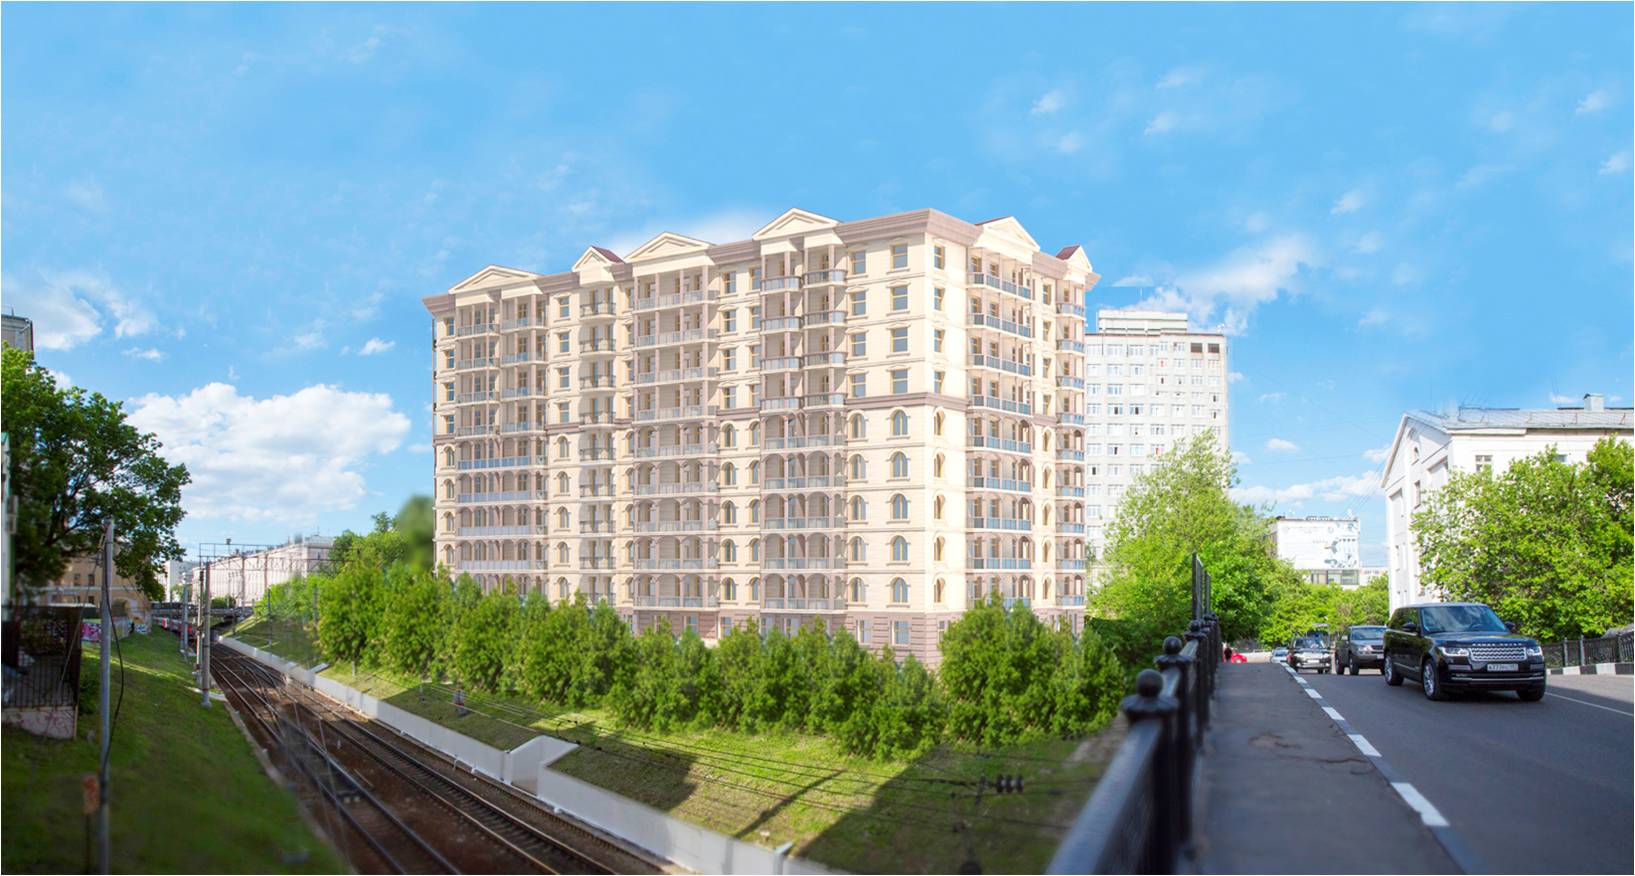 Гостиница с апартаментами на ул. Казакова, вариант фасадов.